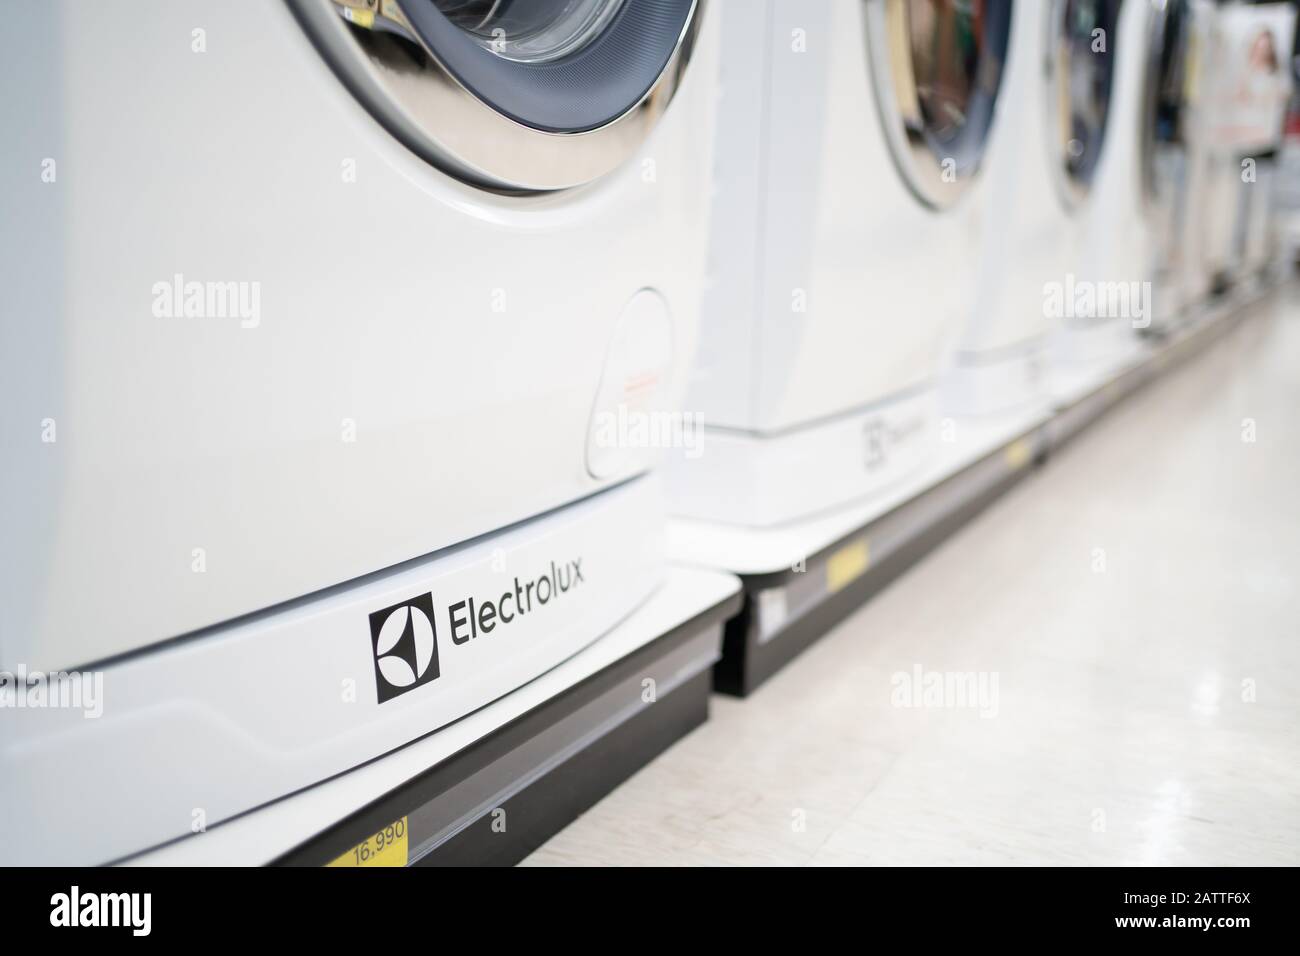 Bangkok, Thailand - January 1, 2020: Logo of Electrolux on a washing machine. Stock Photo